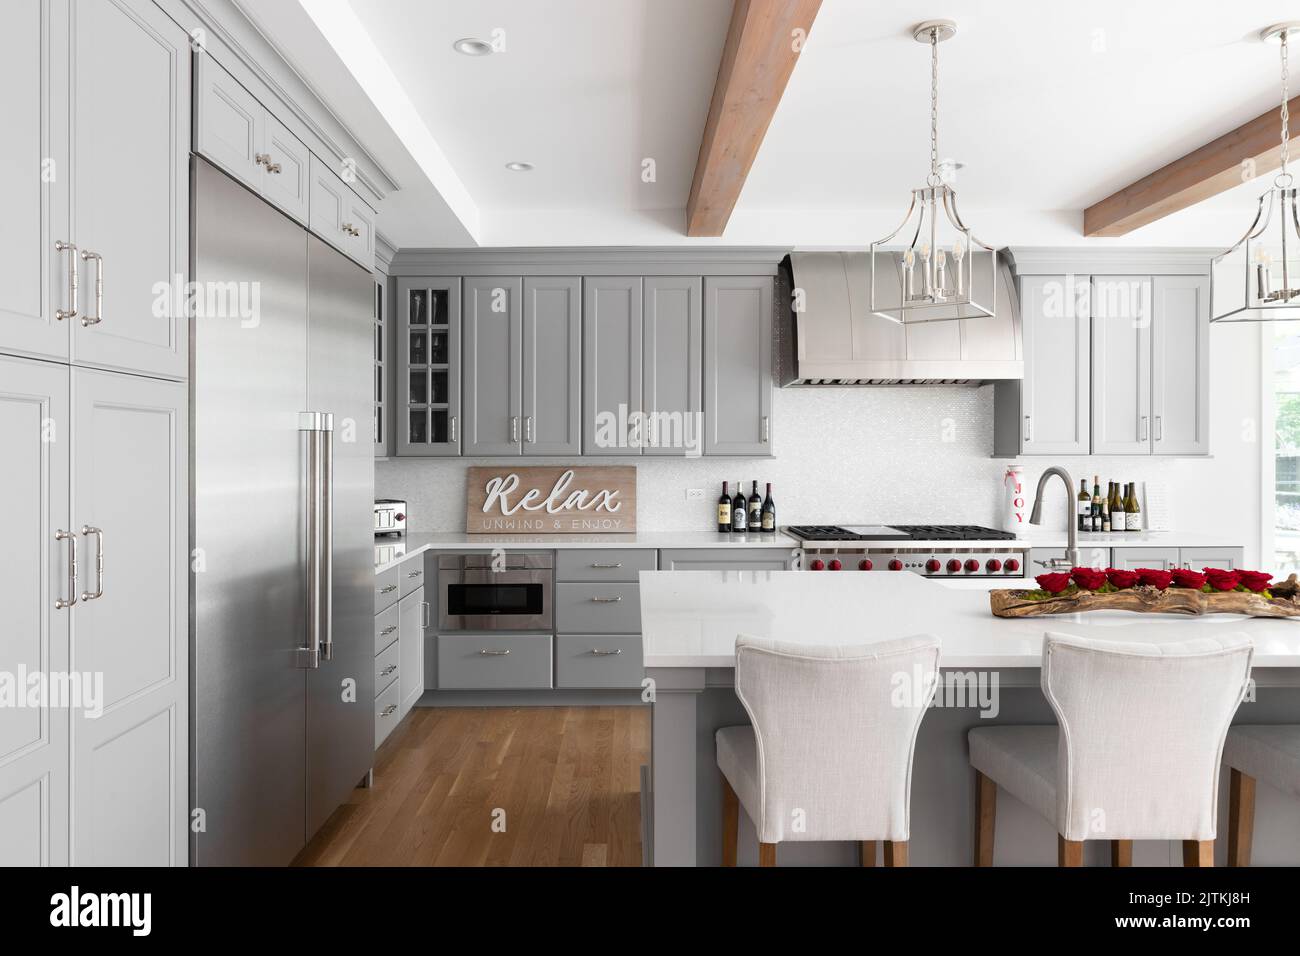 Eine luxuriöse Küche mit grauen Schränken und großer Insel, Arbeitsflächen aus weißem Marmor, freiliegenden Holzbalken und Edelstahlgeräten. Stockfoto